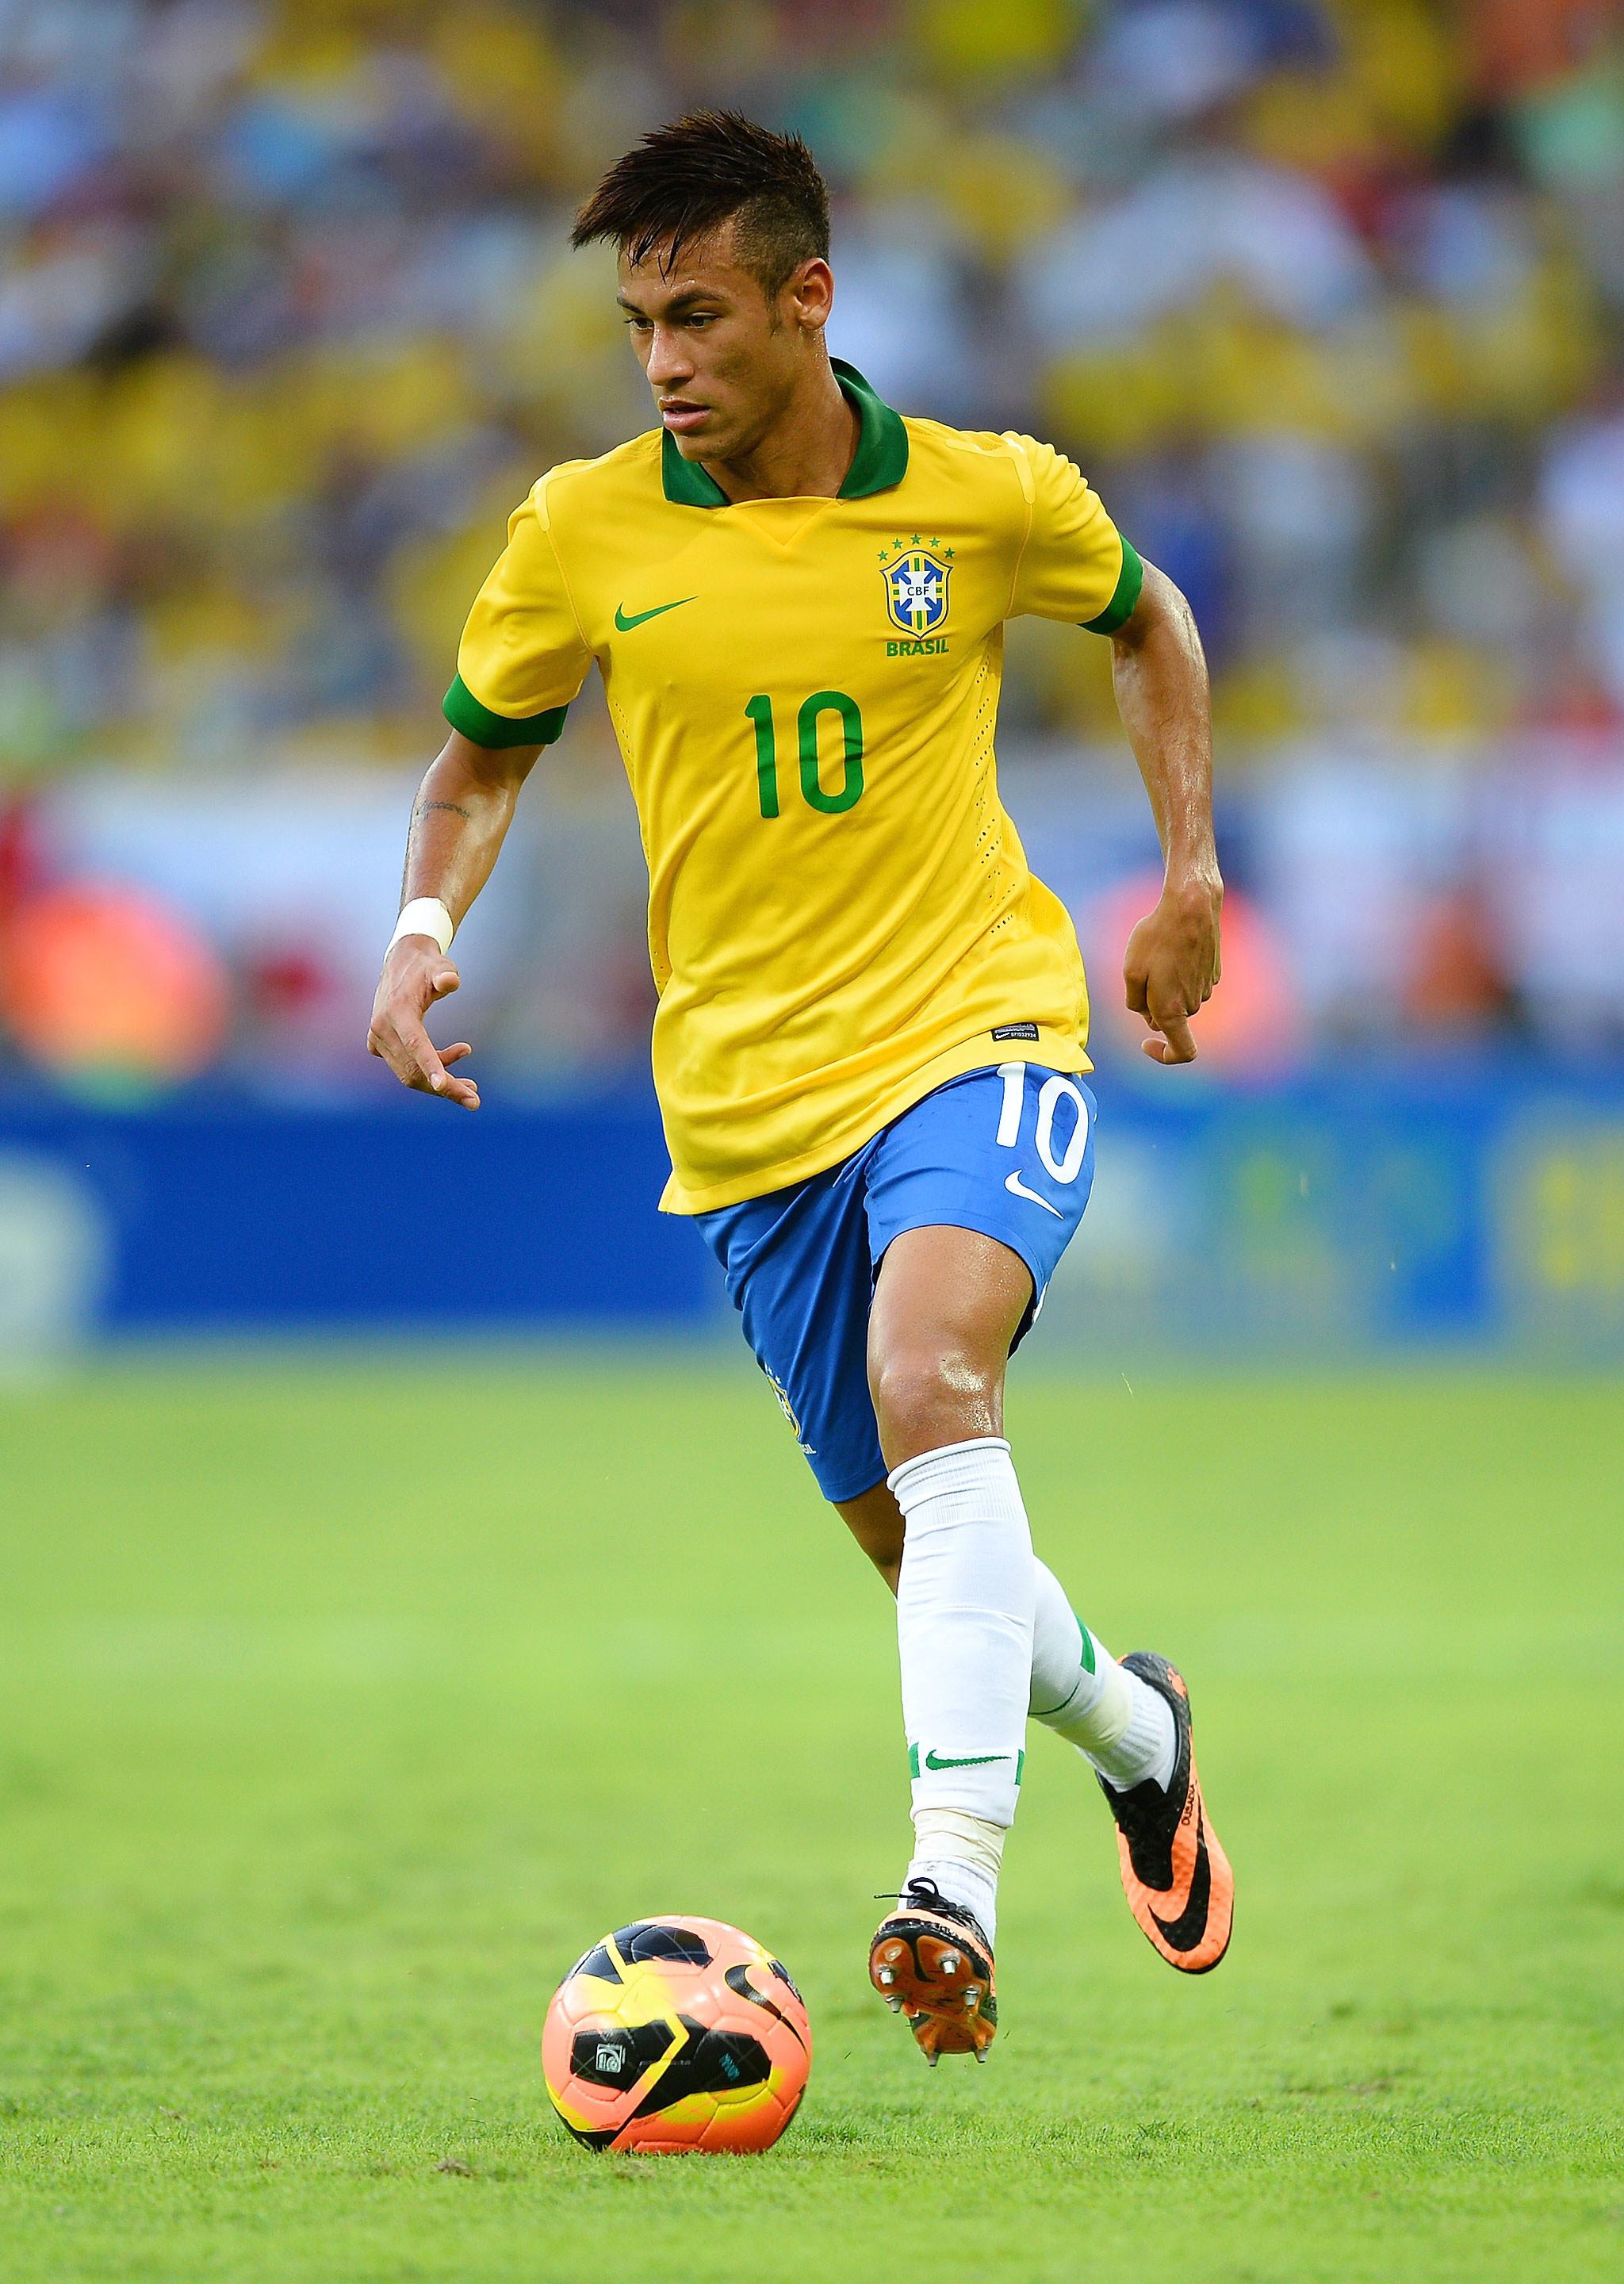 2014 Brazil 10 Neymar Jr Yellow Home Soccer Jersey Image Backgrounds Wallpaper 2048x2880